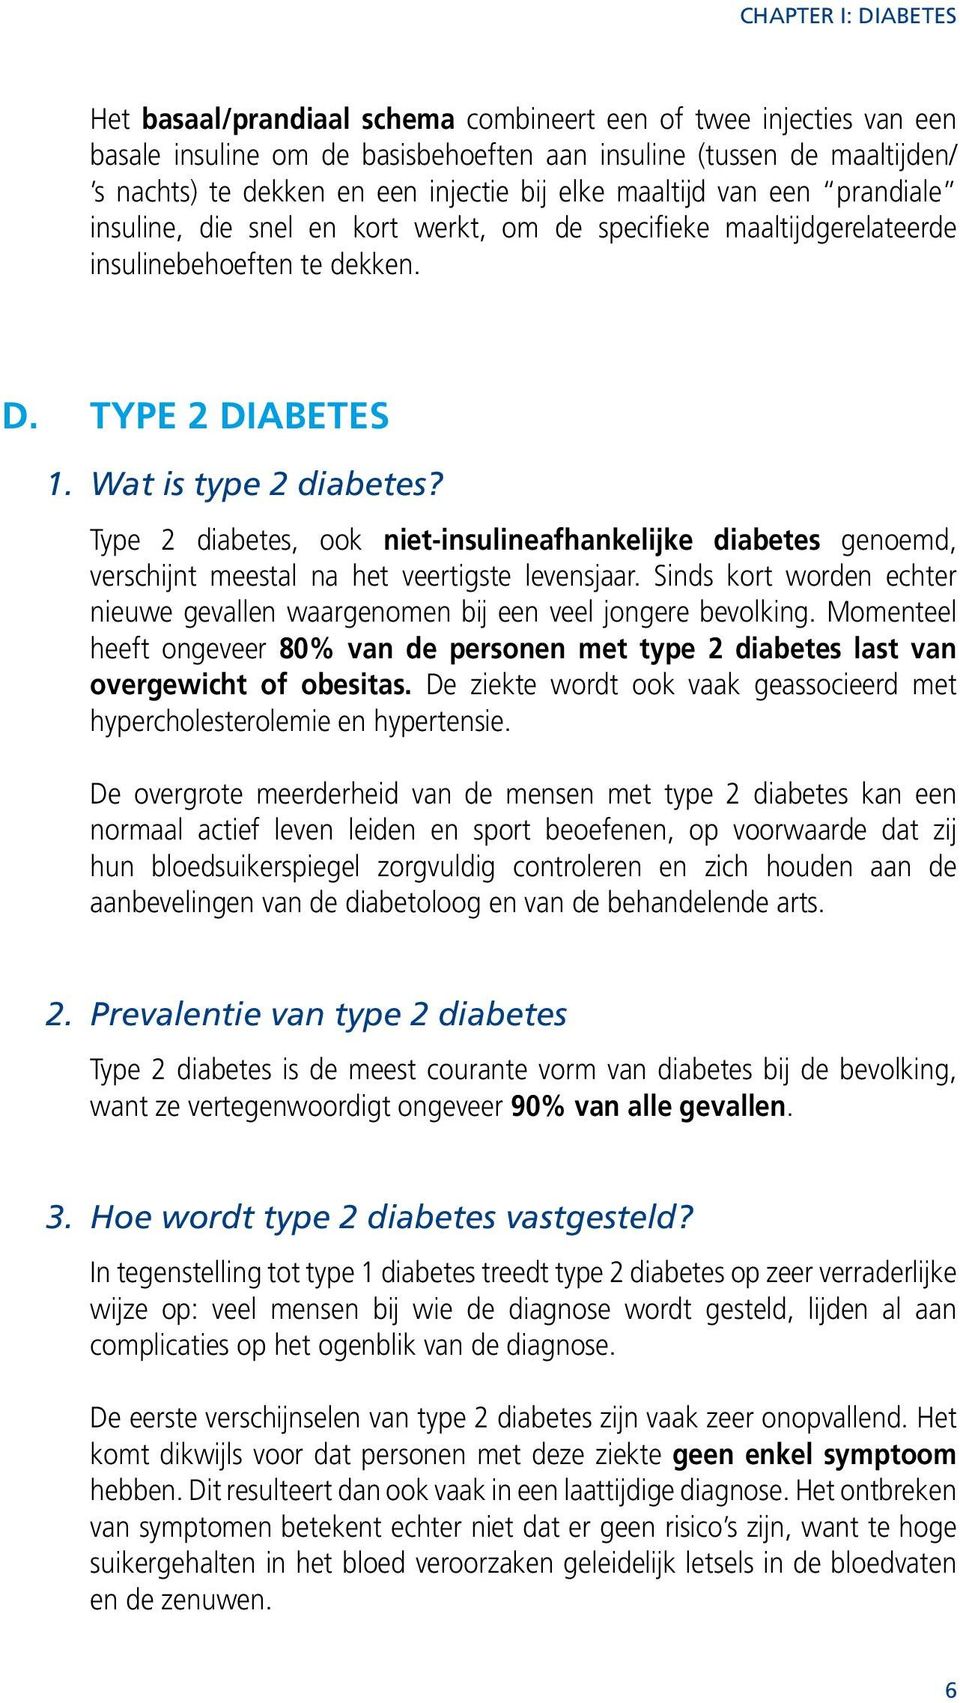 Type 2 diabetes, ook niet-insulineafhankelijke diabetes genoemd, verschijnt meestal na het veertigste levensjaar. Sinds kort worden echter nieuwe gevallen waargenomen bij een veel jongere bevolking.